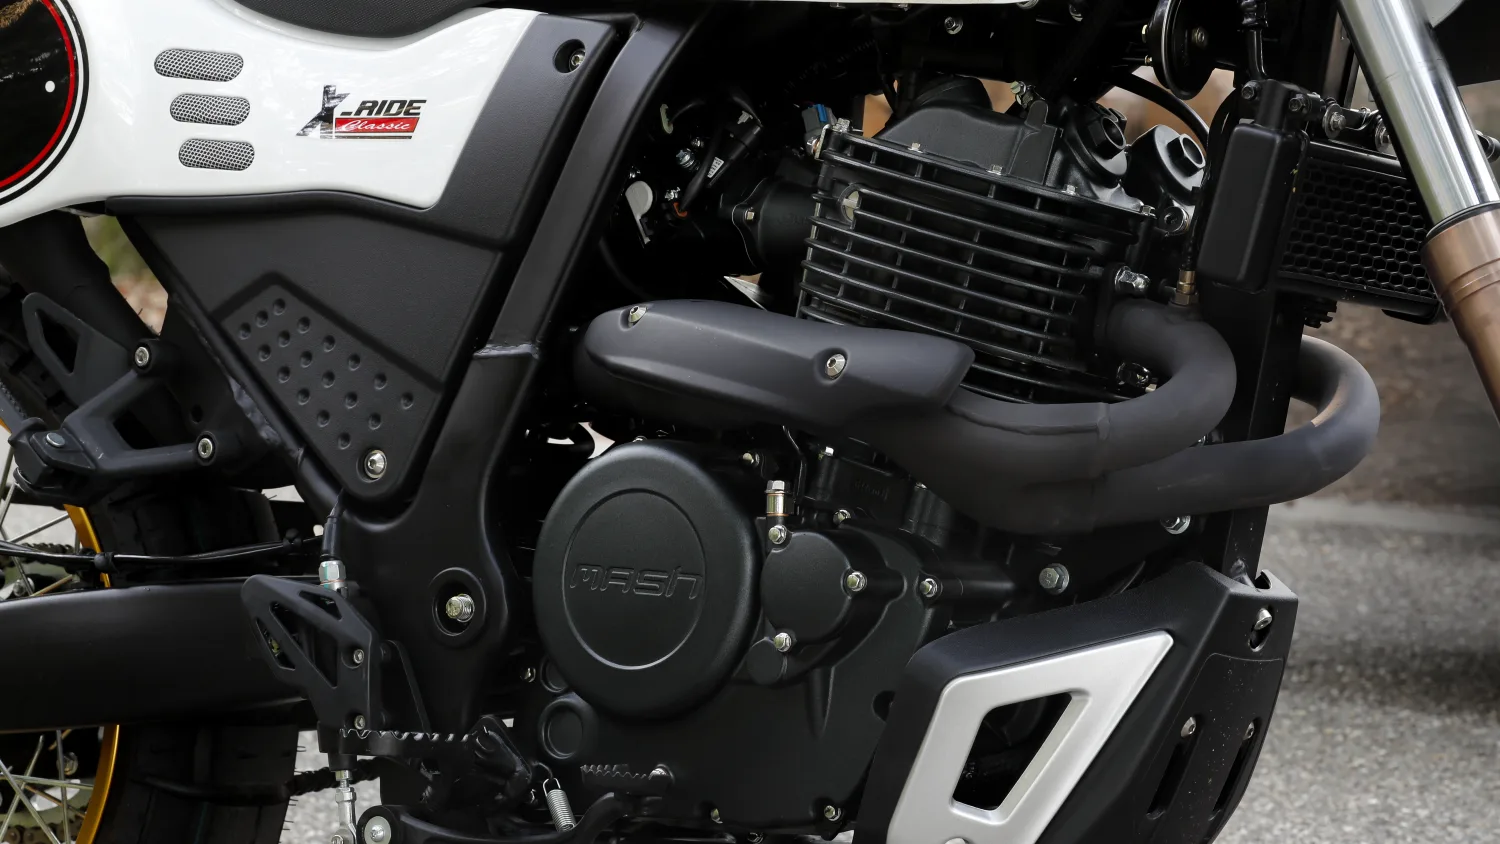 Mash Xride 650cc Modelo De Trilha De Motocicleta Estacionado Na